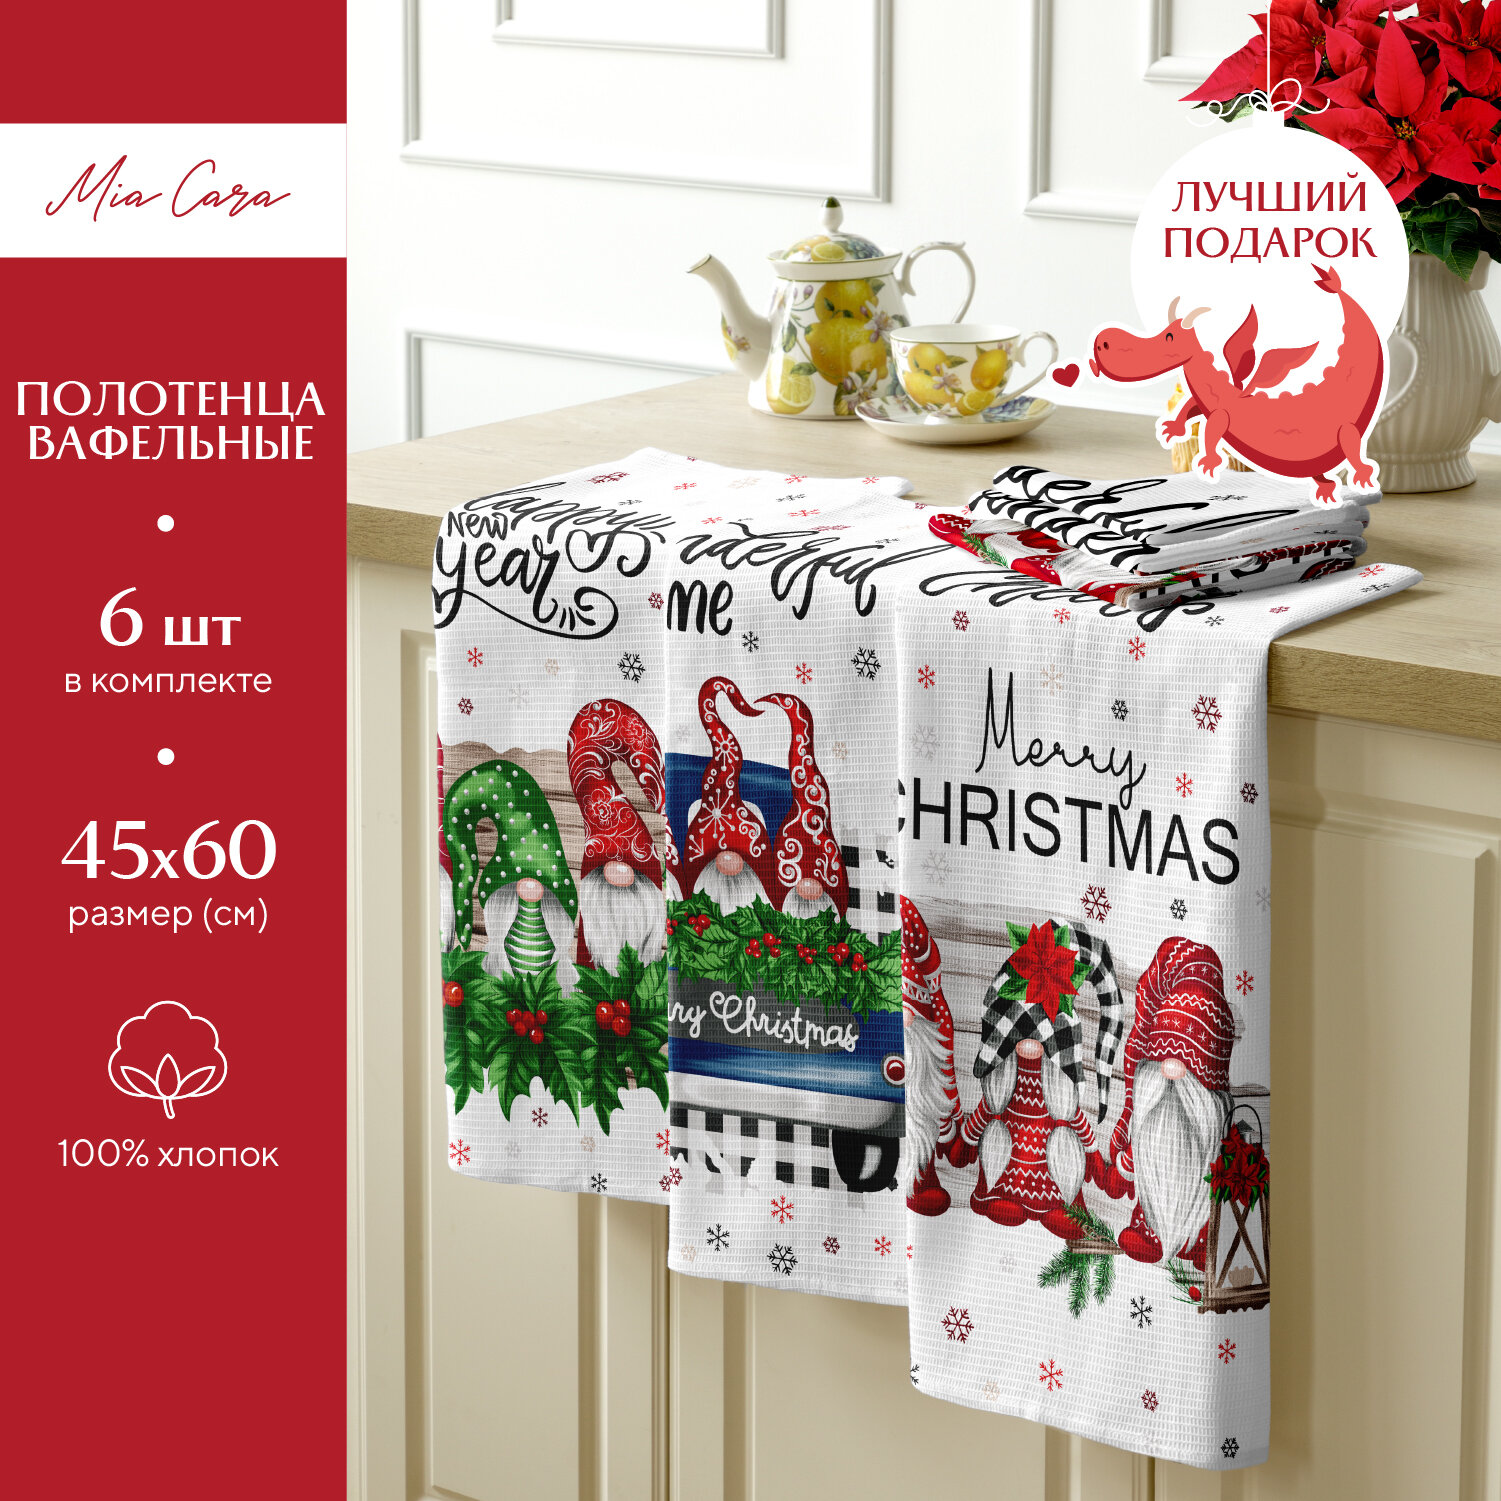 Комплект вафельных полотенец 45х60 (6 шт.) "Mia Cara" рис 30440-1 Новогодние эльфы